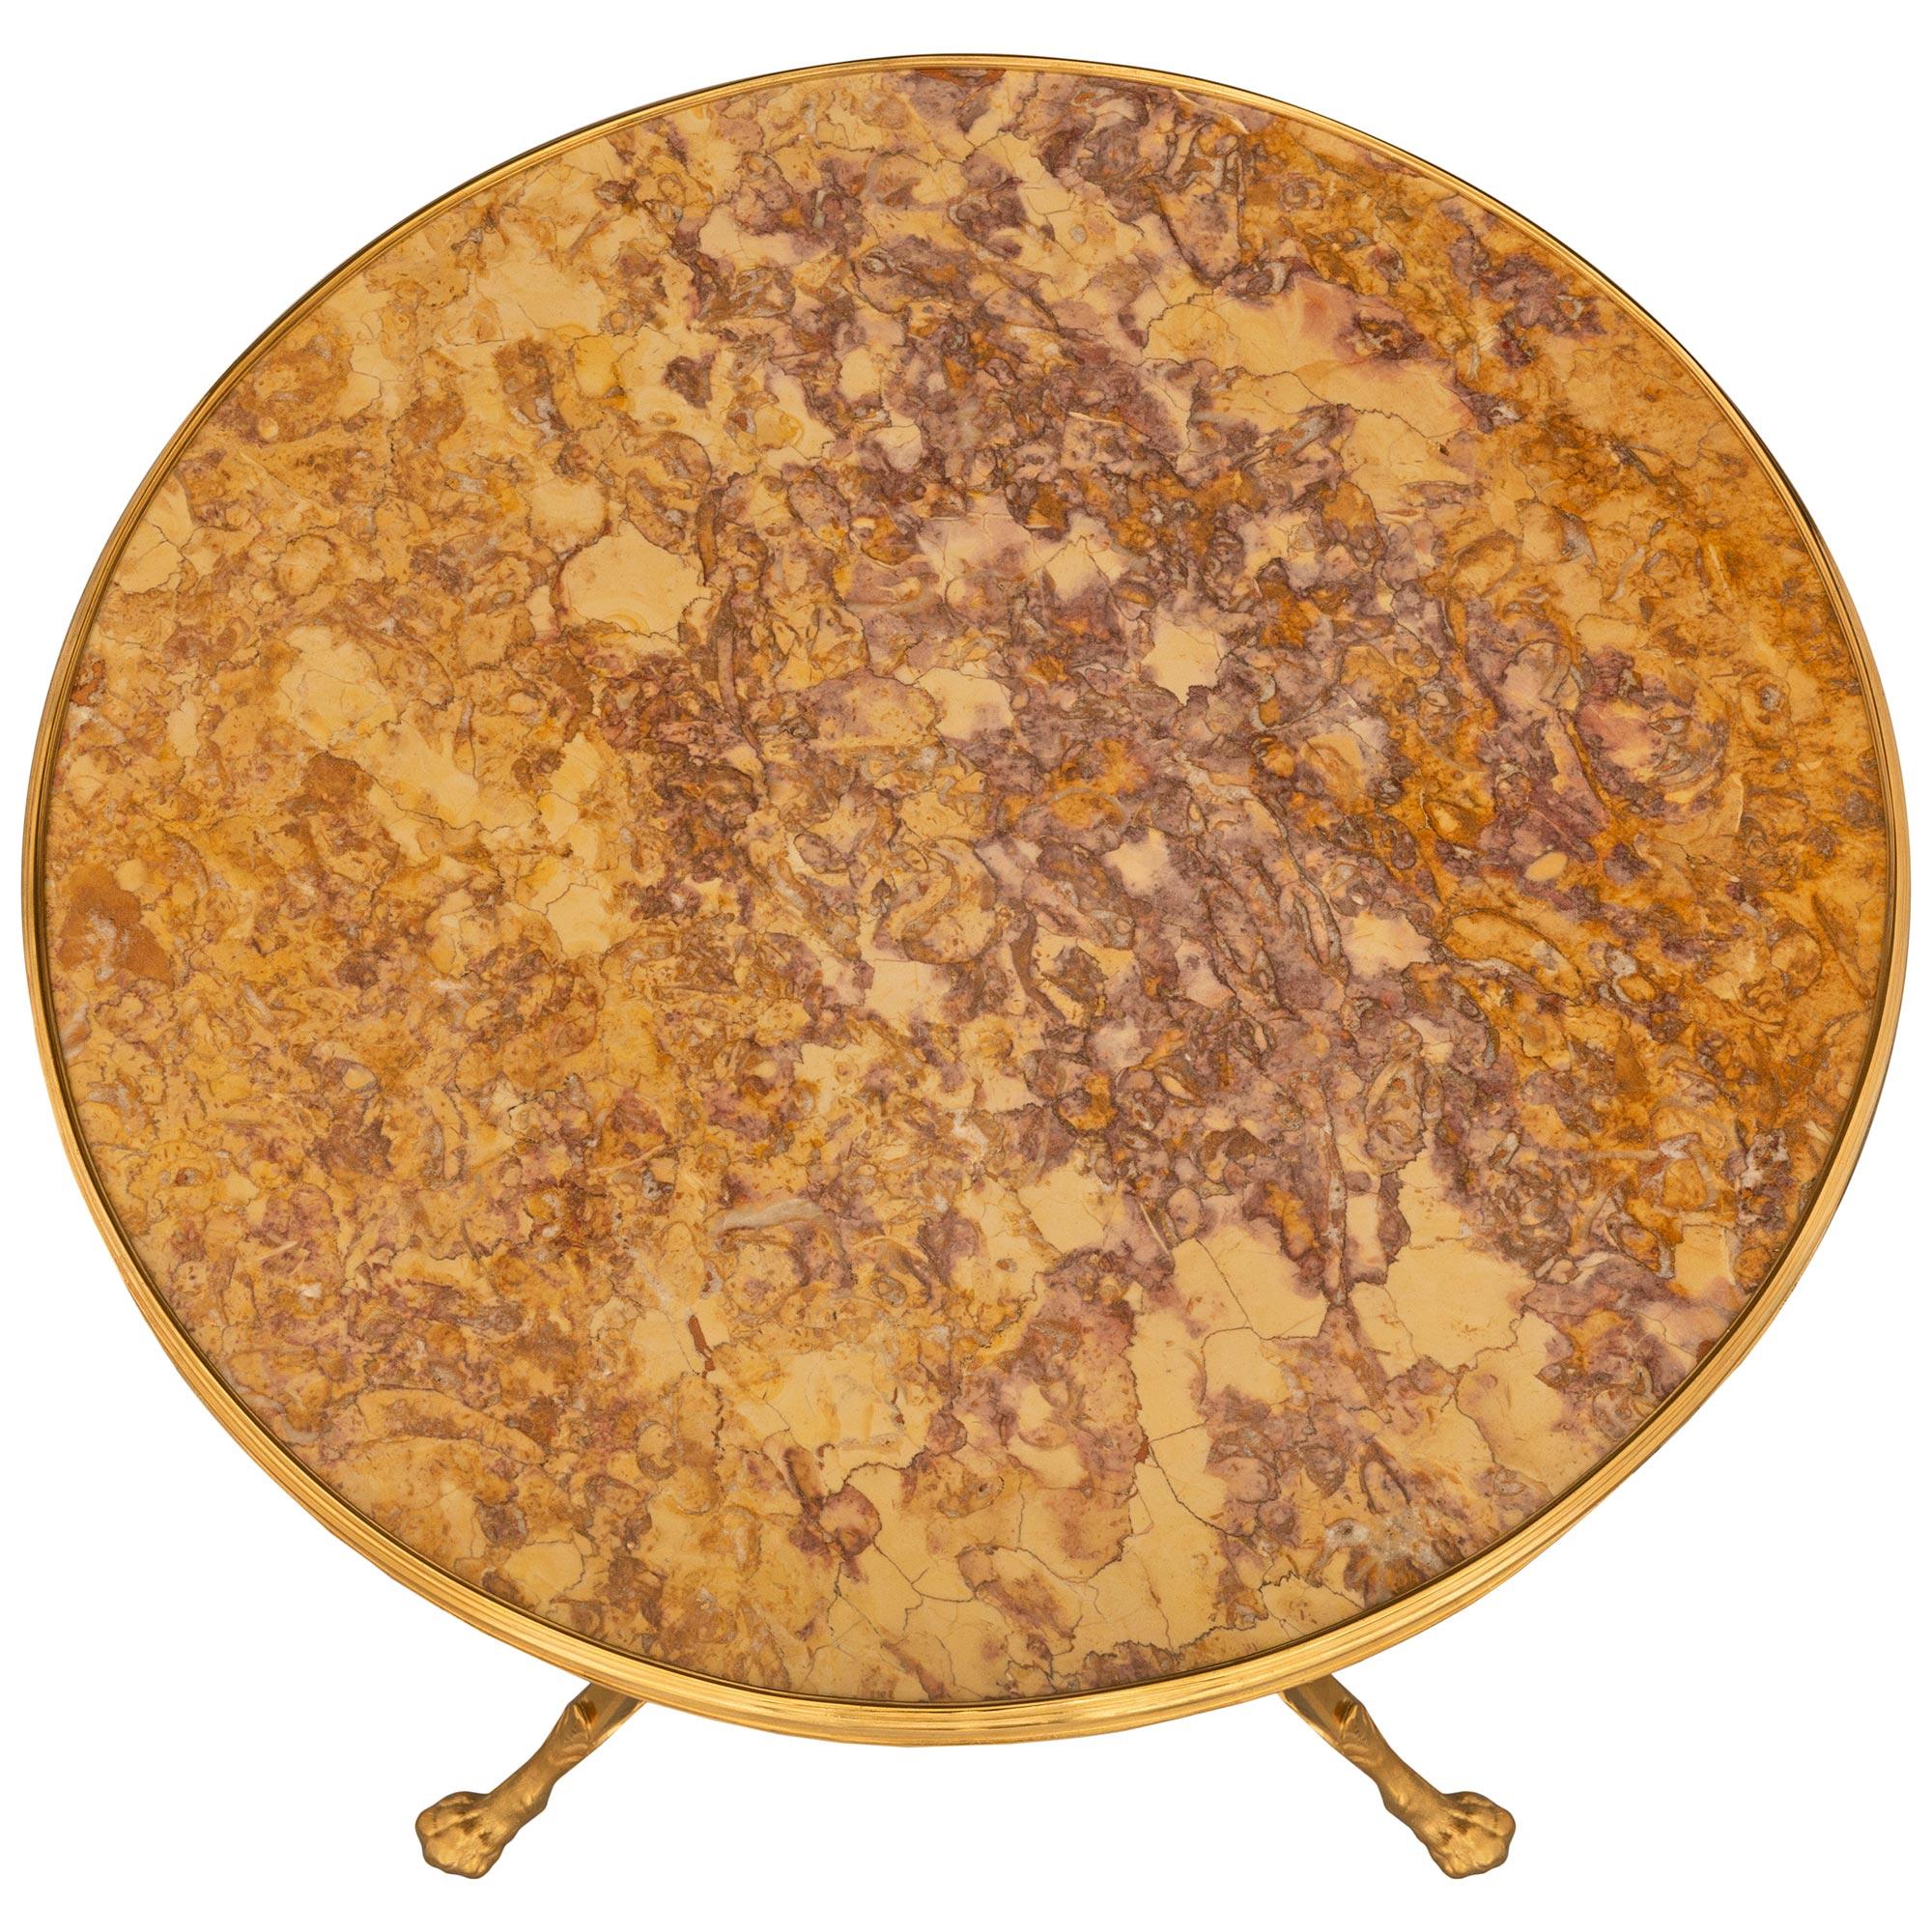 Ein eleganter und äußerst dekorativer französischer Beistelltisch aus dem 19. Jahrhundert aus Louis XVI-Ormolu und Brocatelle-Marmor. Der Tisch ruht auf drei schönen, leicht geschwungenen Beinen mit reich ziselierten Tatzenfüßen, die mit feinen